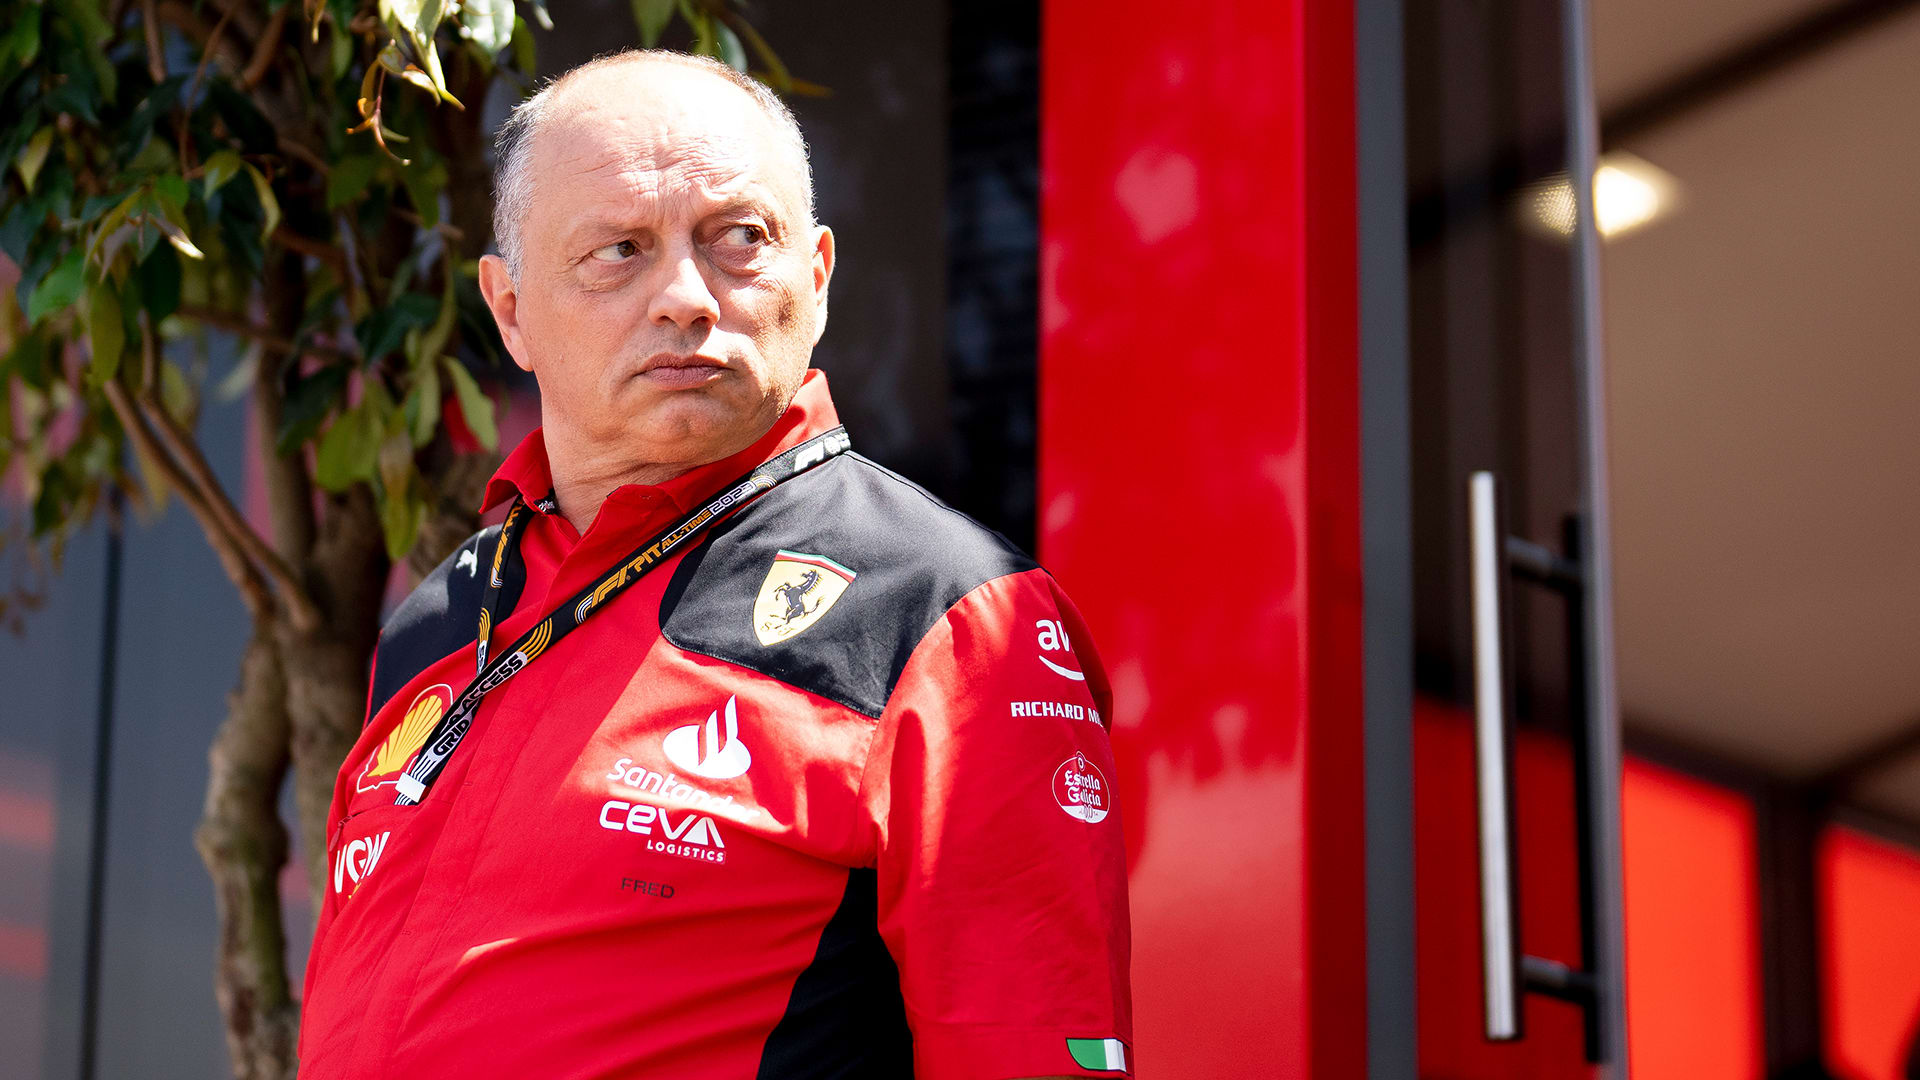 We are not sending him an offer' – Vasseur issues firm denial over  Hamilton-to-Ferrari rumours | Formula 1®